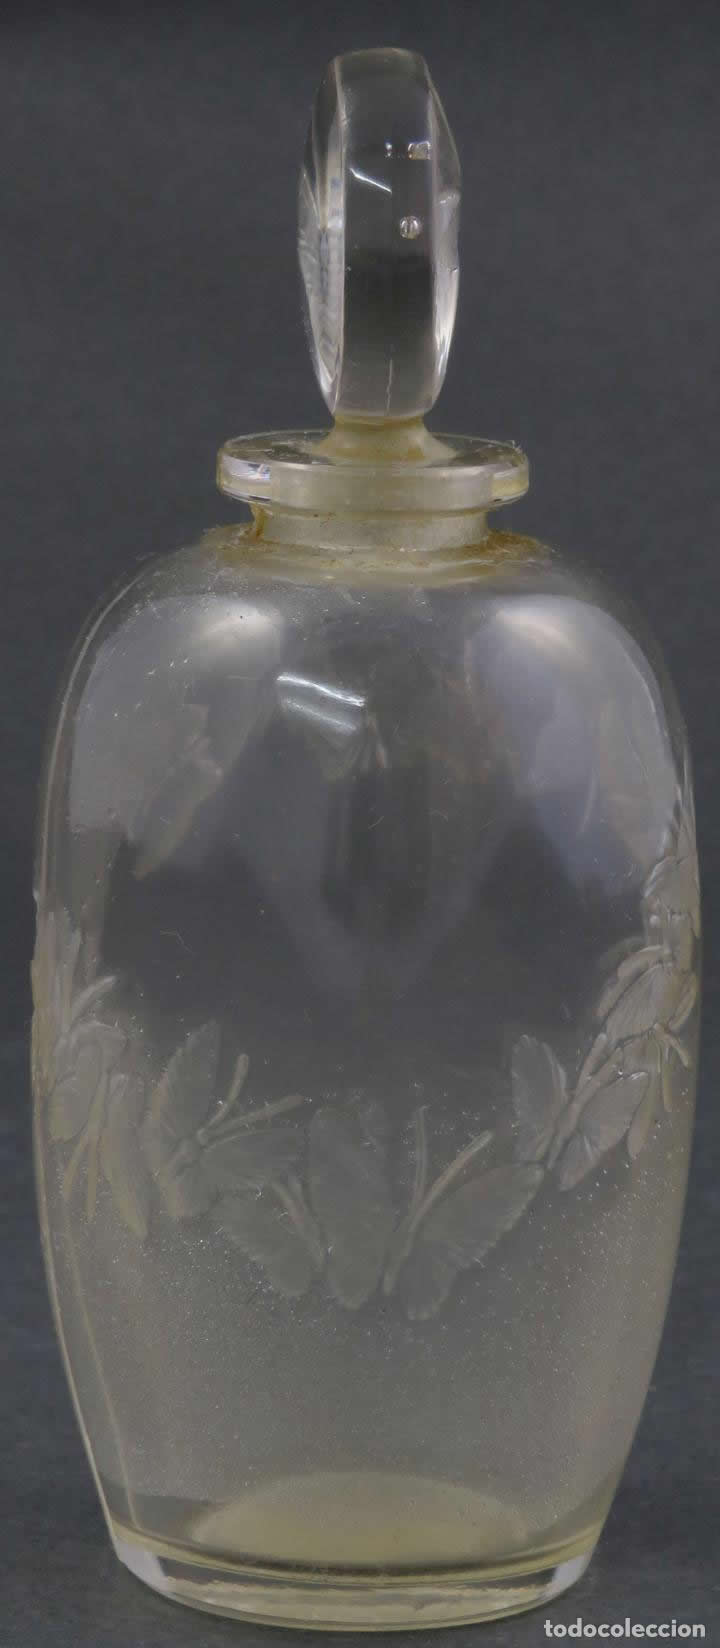 R. Lalique L'Anneau Merveilleux-2 Perfume Bottle 4 of 4